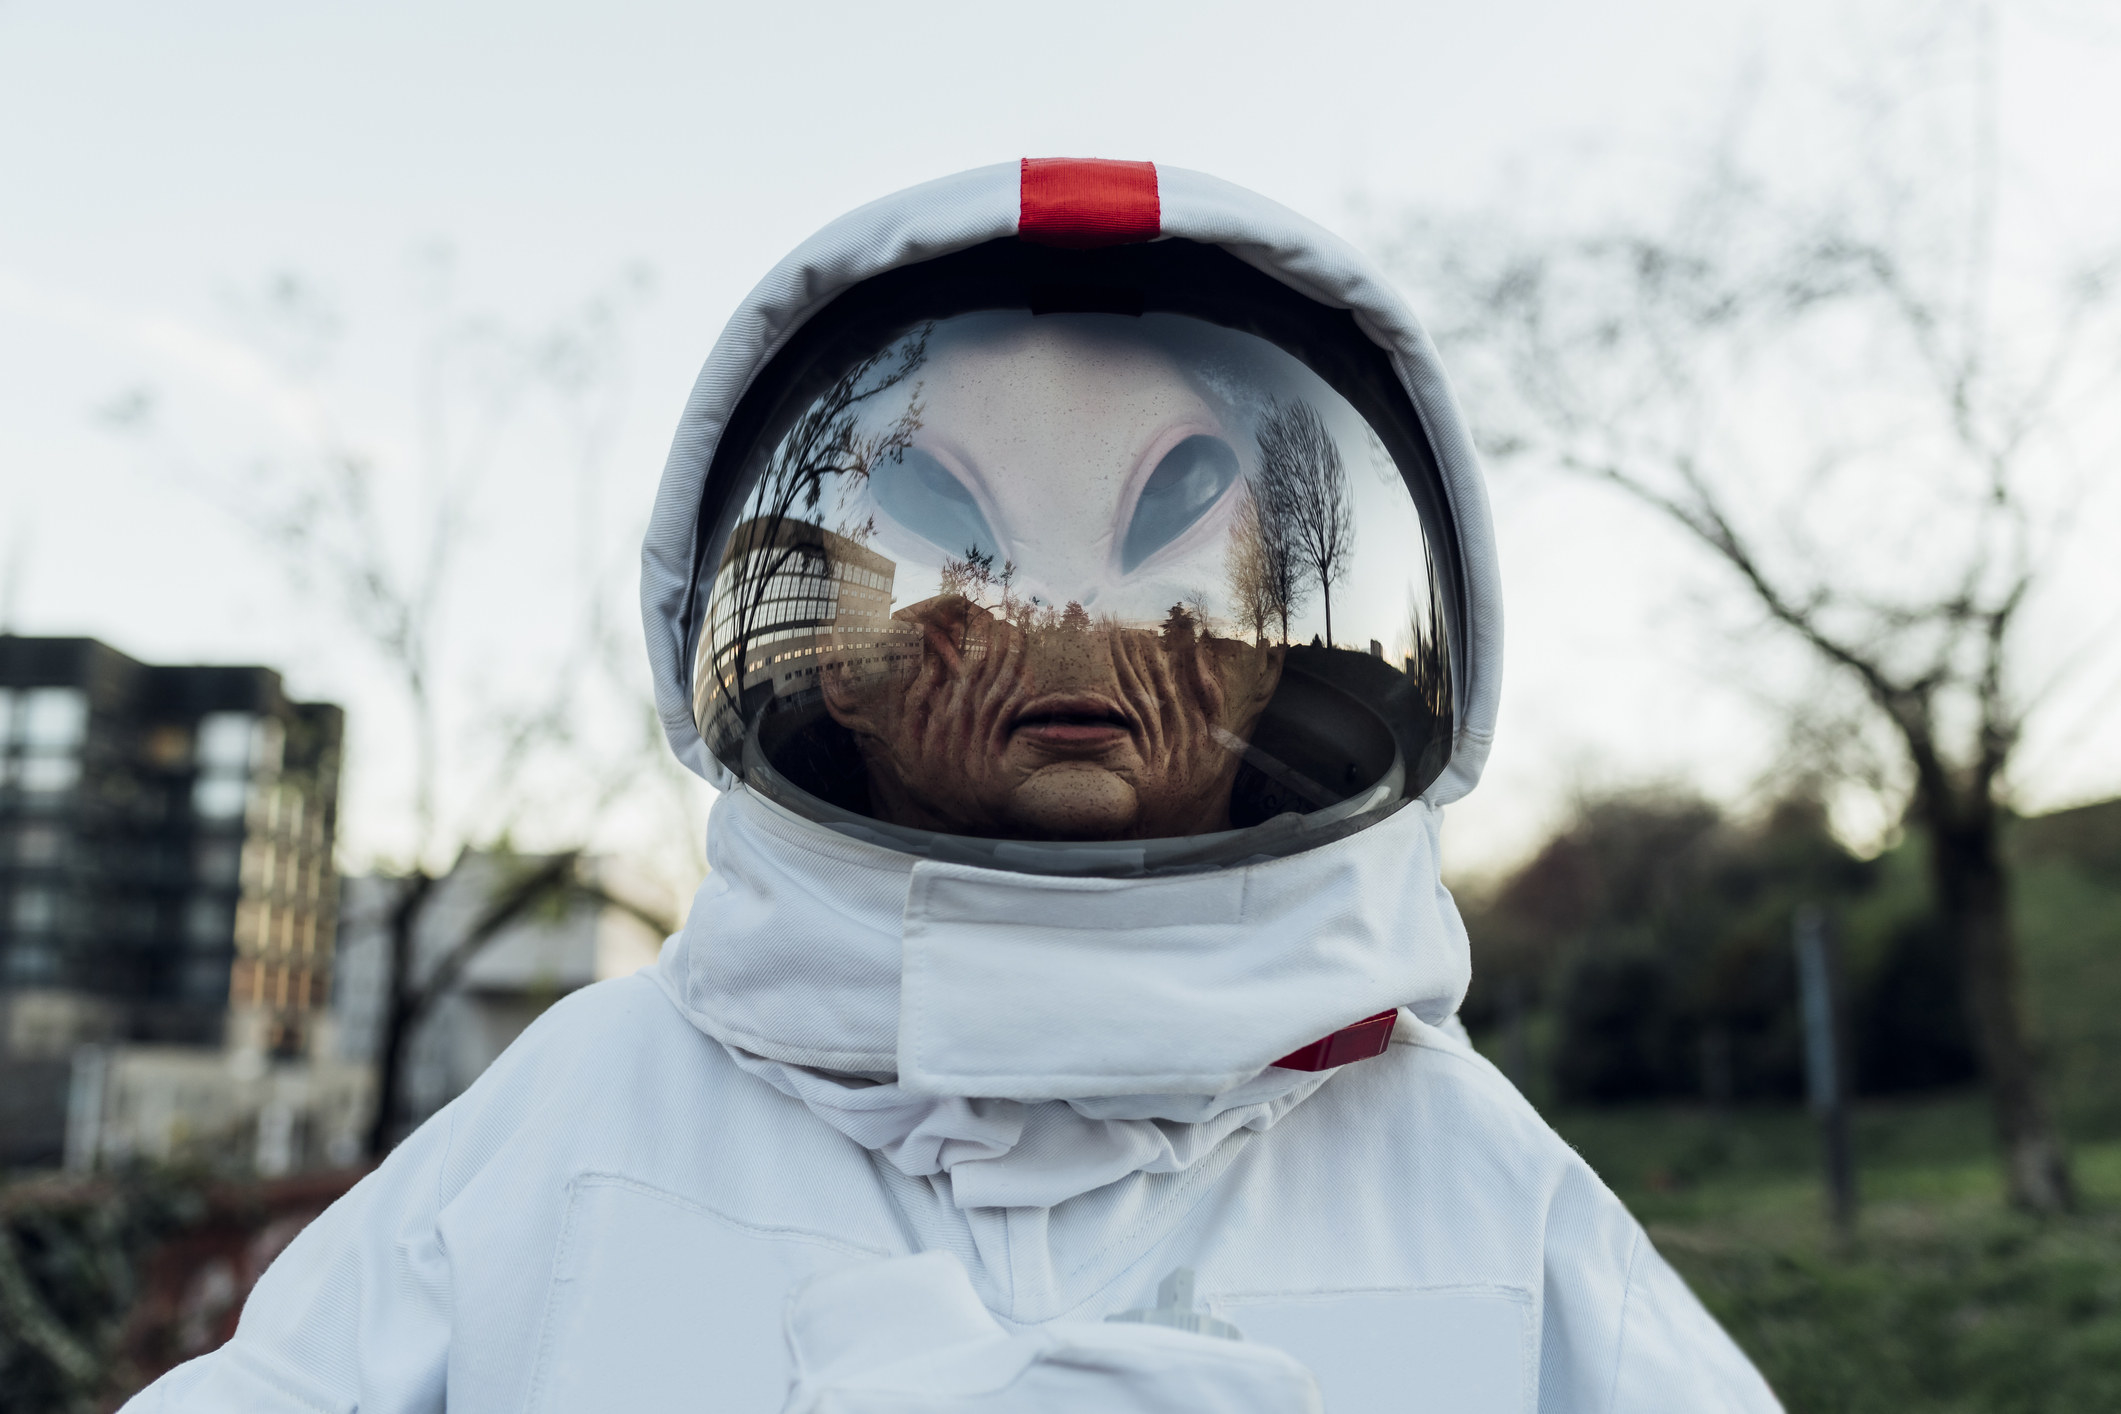 An alien wearing astronaut garb